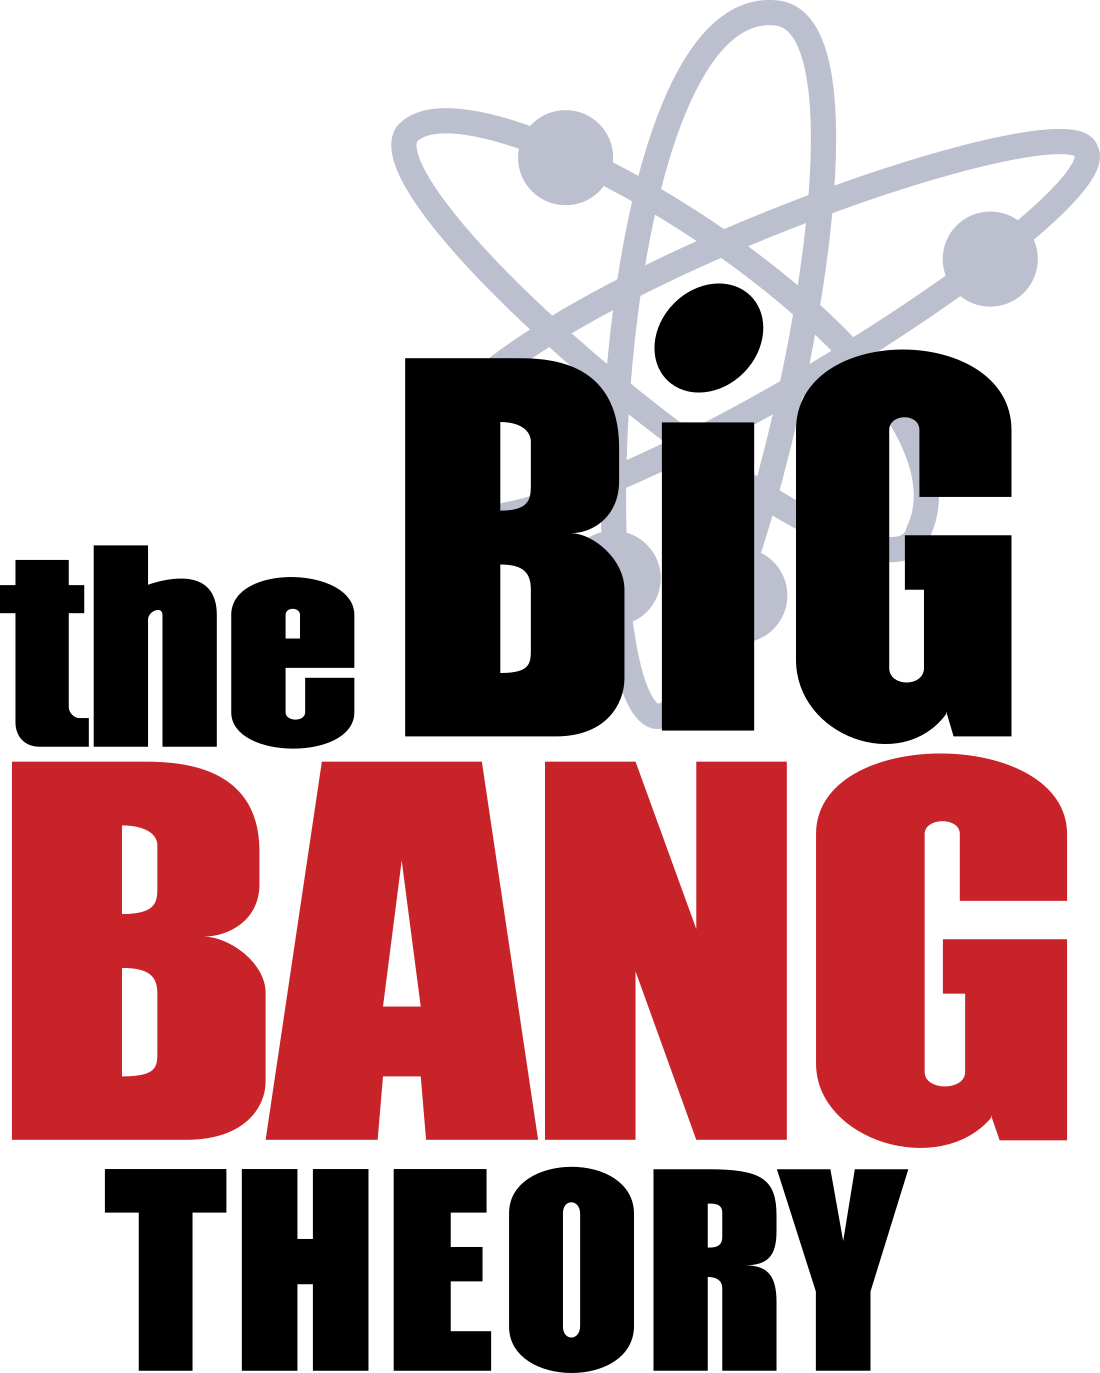 The Big Bang Theory Logo.